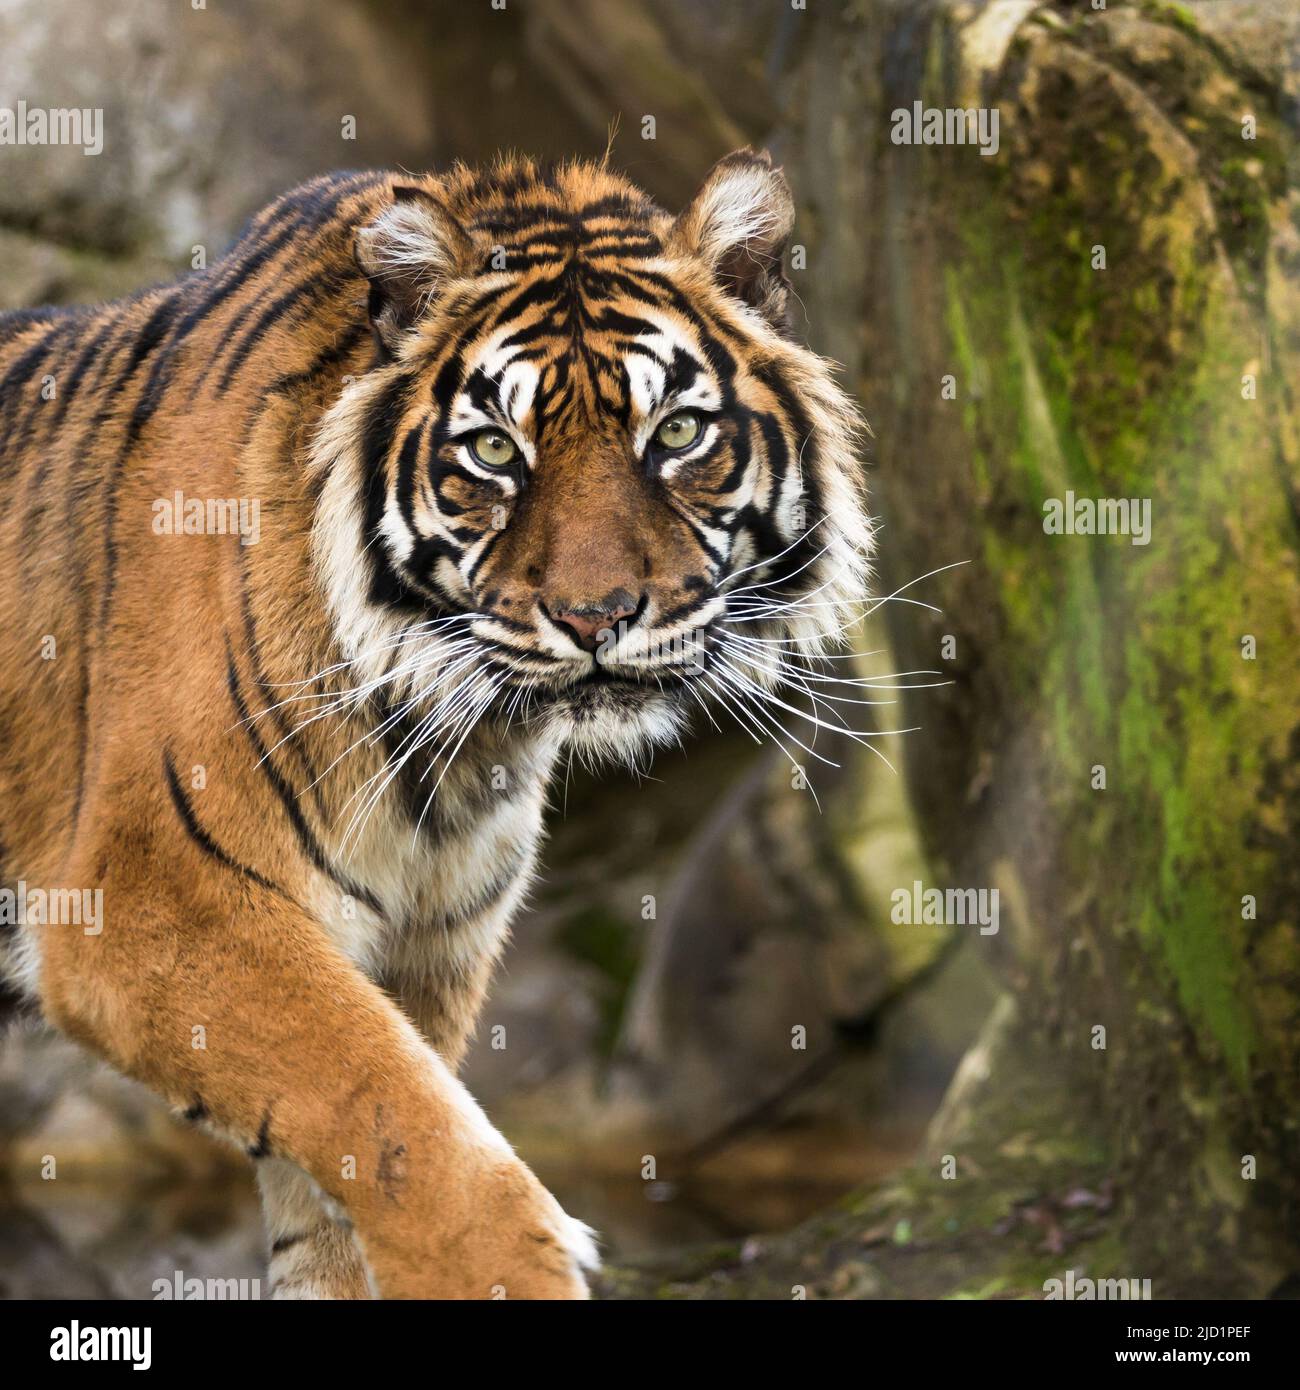 El tigre de Sumatra. Especies animales en peligro de extinción. Belleza de la naturaleza.Salvaguardia de especies animales. Foto de stock